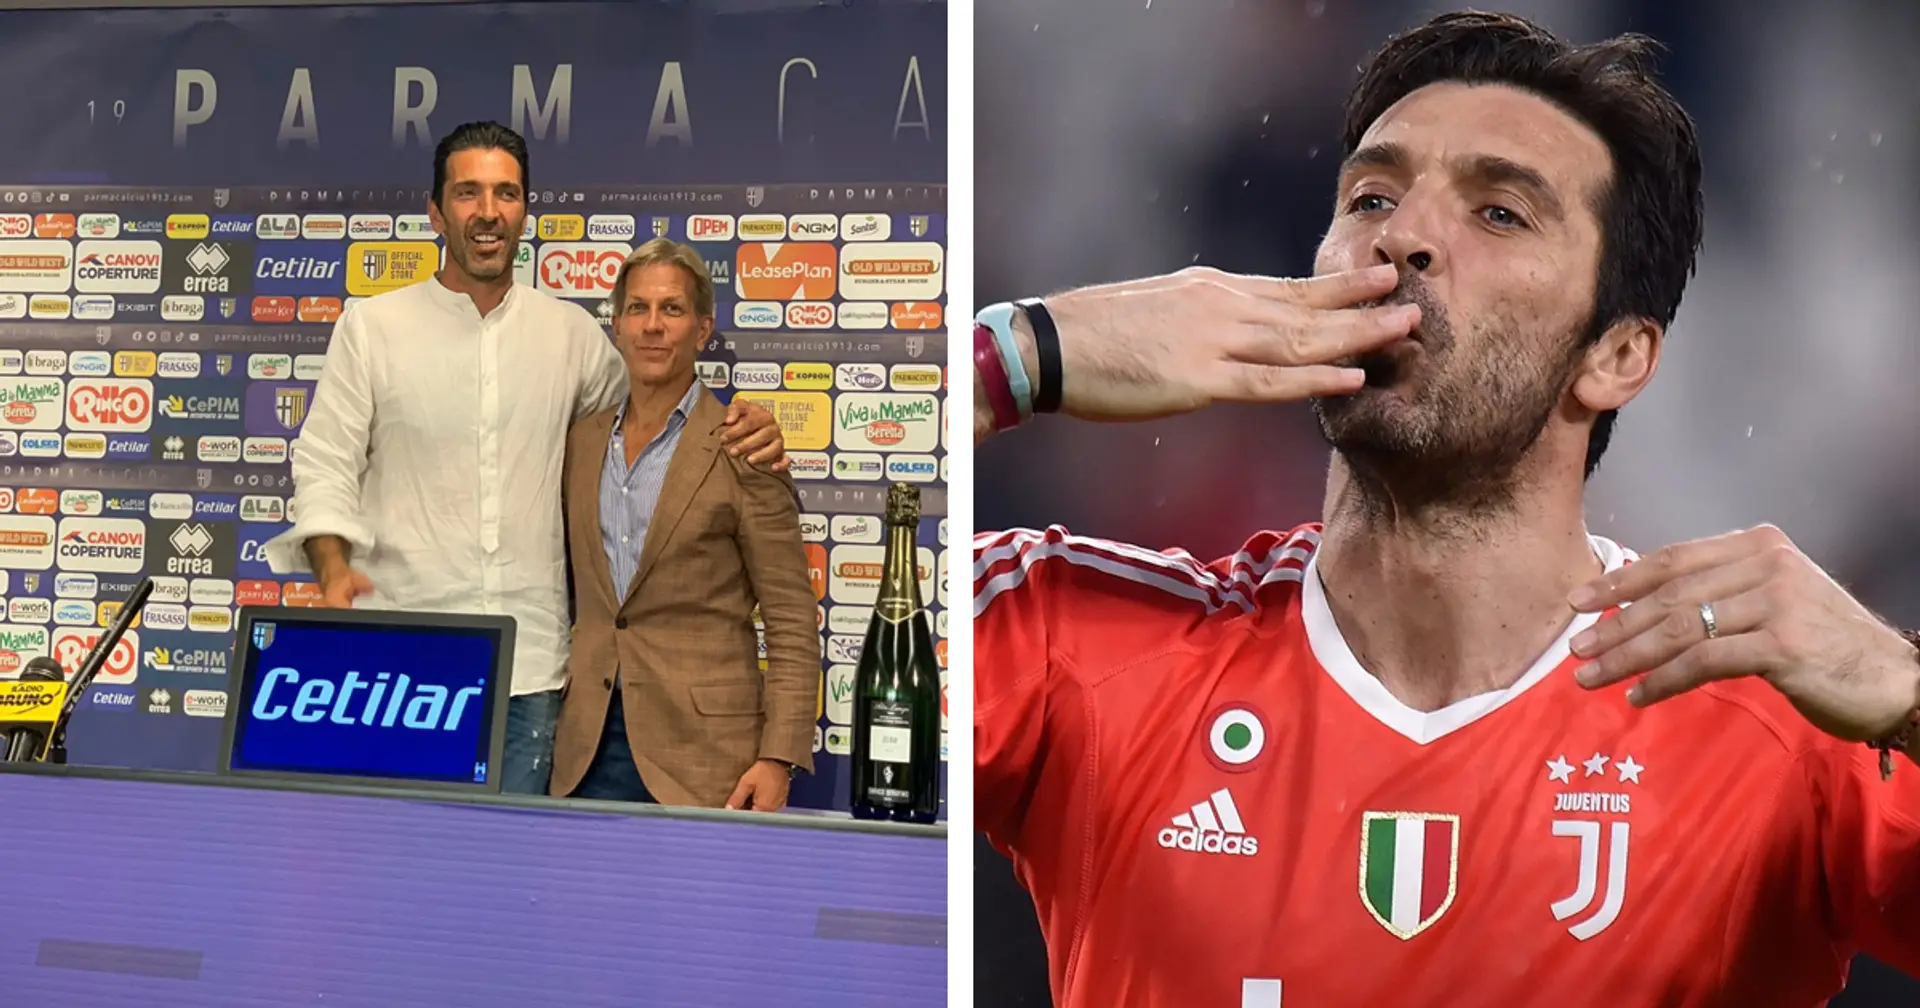 "Ecco perchè ho scelto Parma": le prime di Buffon da ex-Juve sono un mix di ricordi ed emozioni